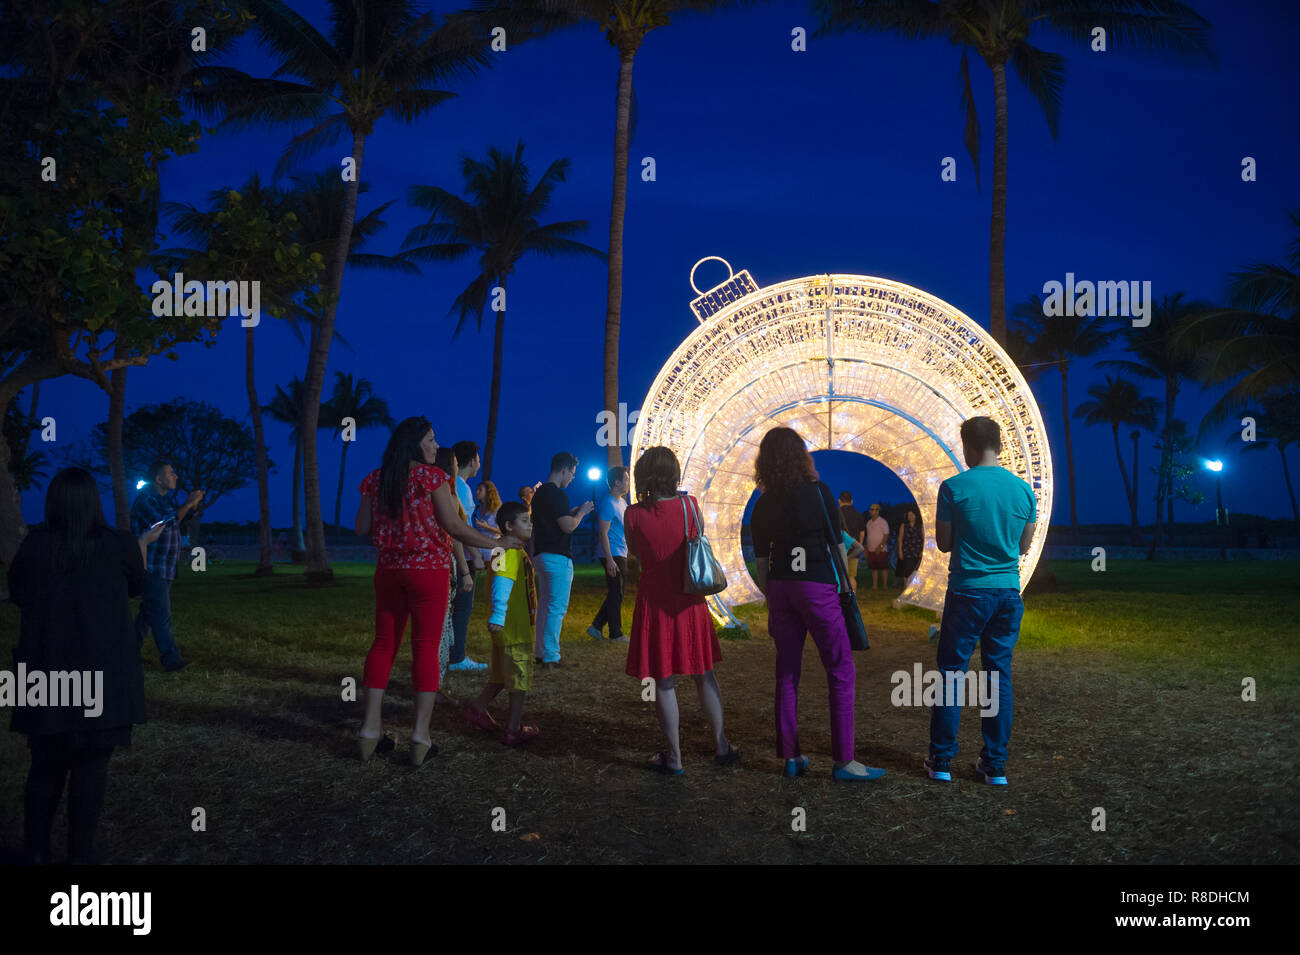 MIAMI - DÉCEMBRE, 2017 : Les visiteurs se réunissent pour prendre des photos en face d'un gigantesque sapin noël ornement situé dans les palmiers de Lummus Park. Banque D'Images